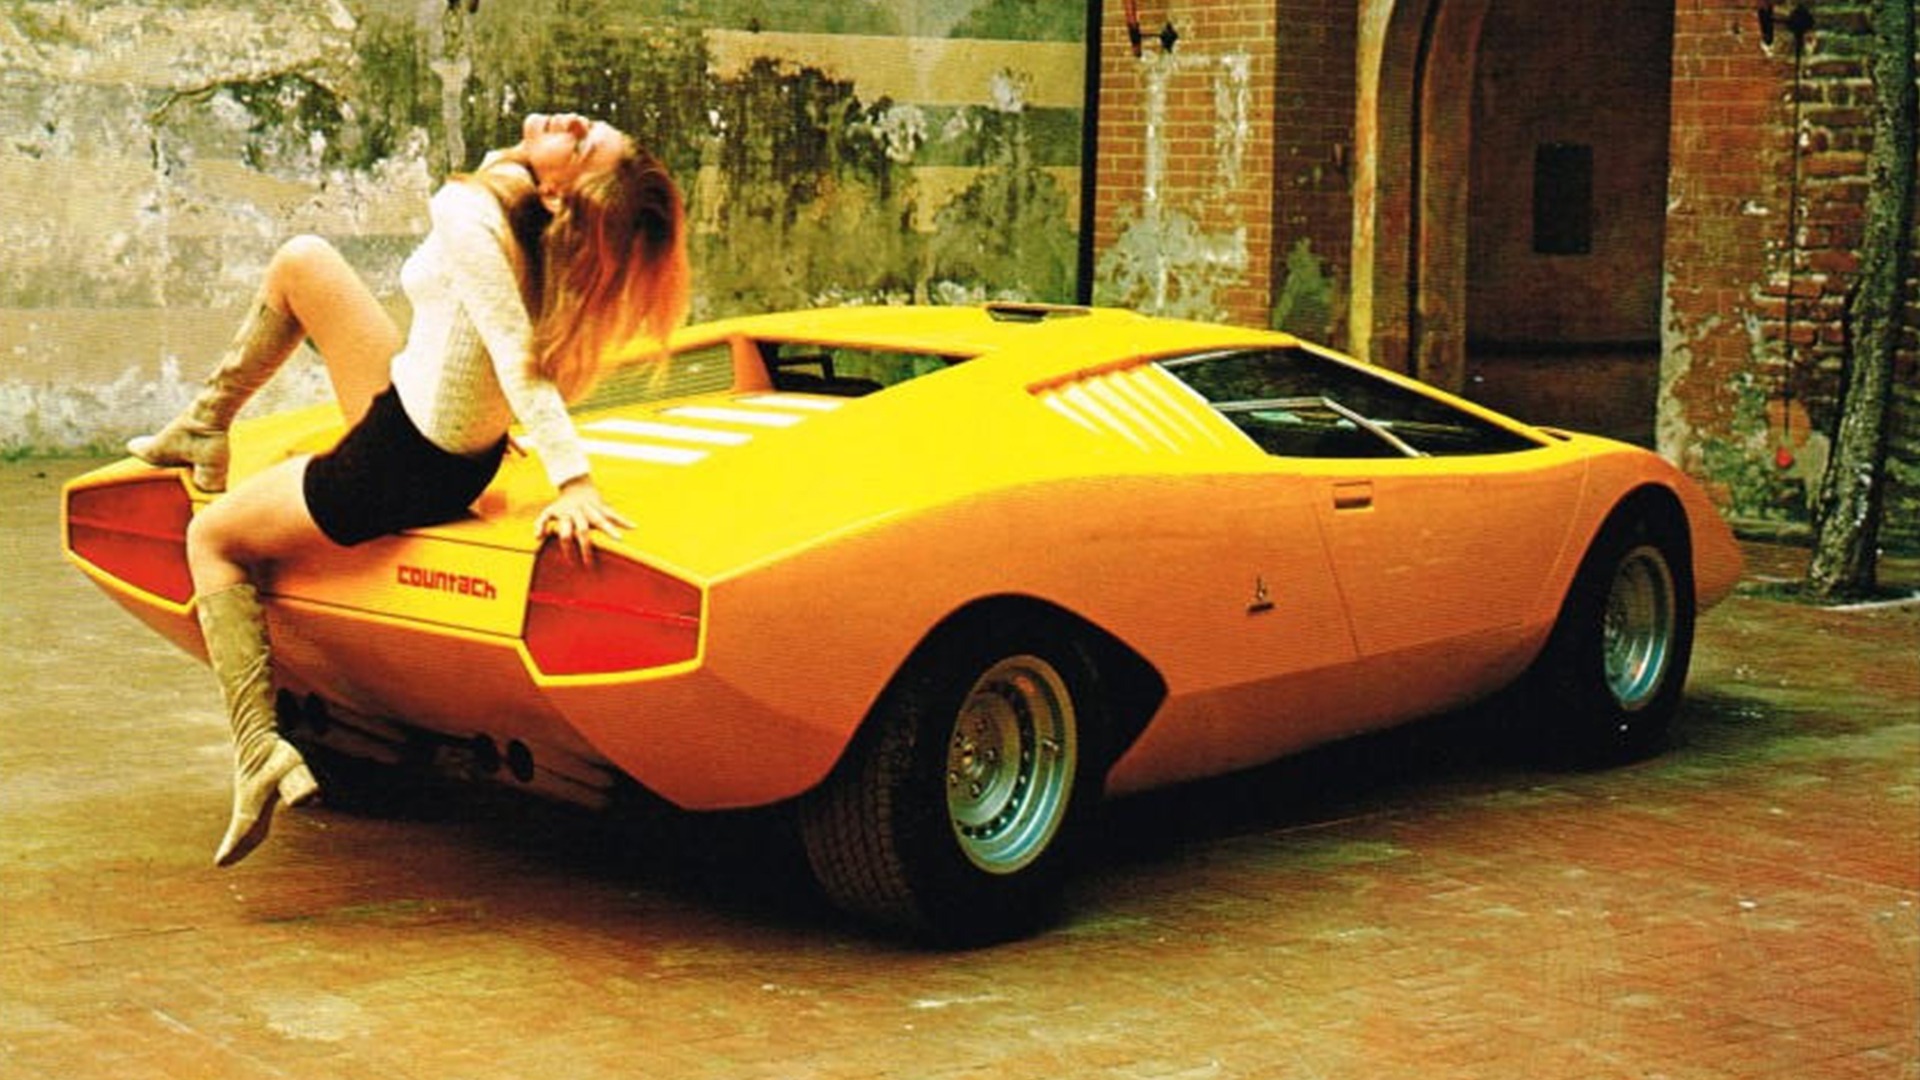 Lordens Garasje ep.169 – Bilåret 1971